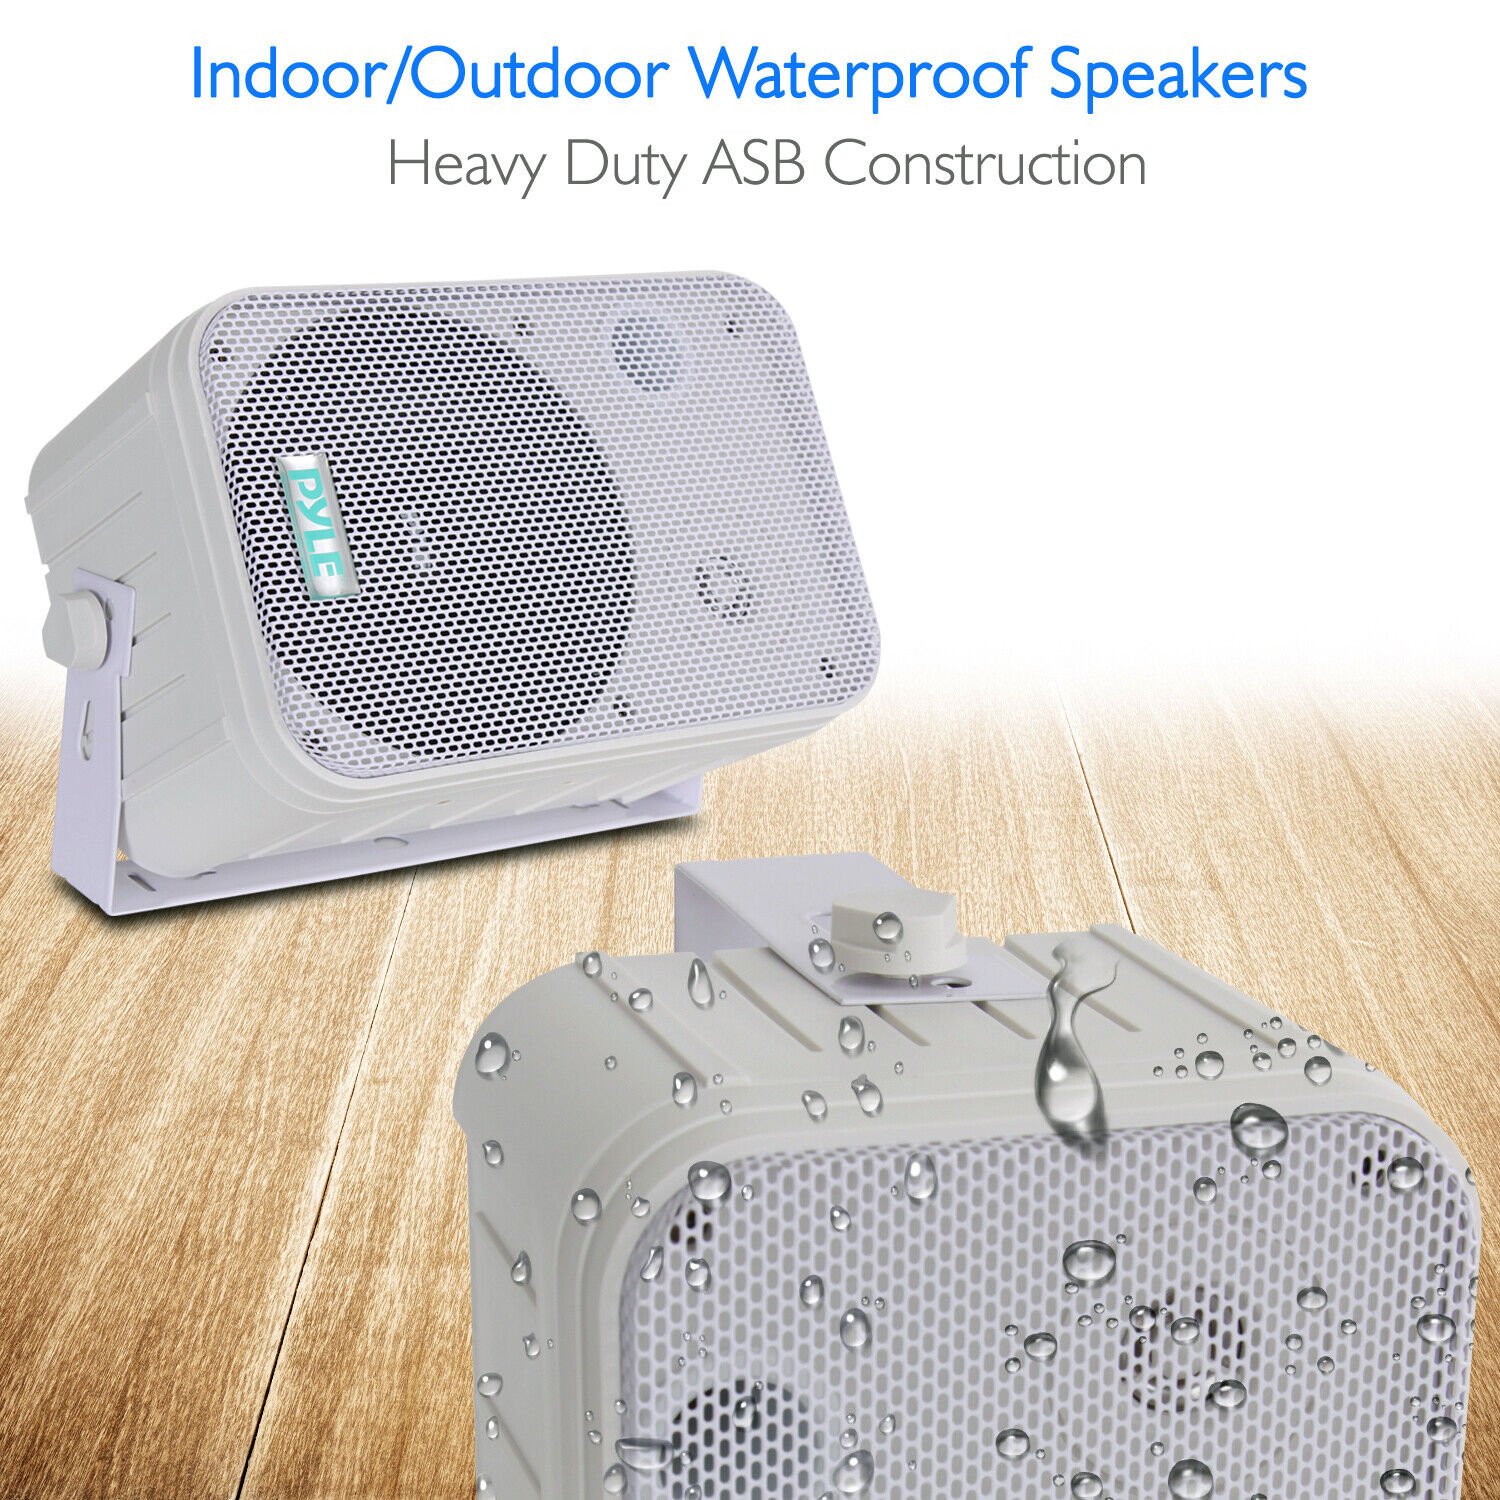 Pyle Home PDWR50W 6.5 Inch 500 Watt Indoor/Outdoor Waterproof Deck Speakers - image 5 of 9